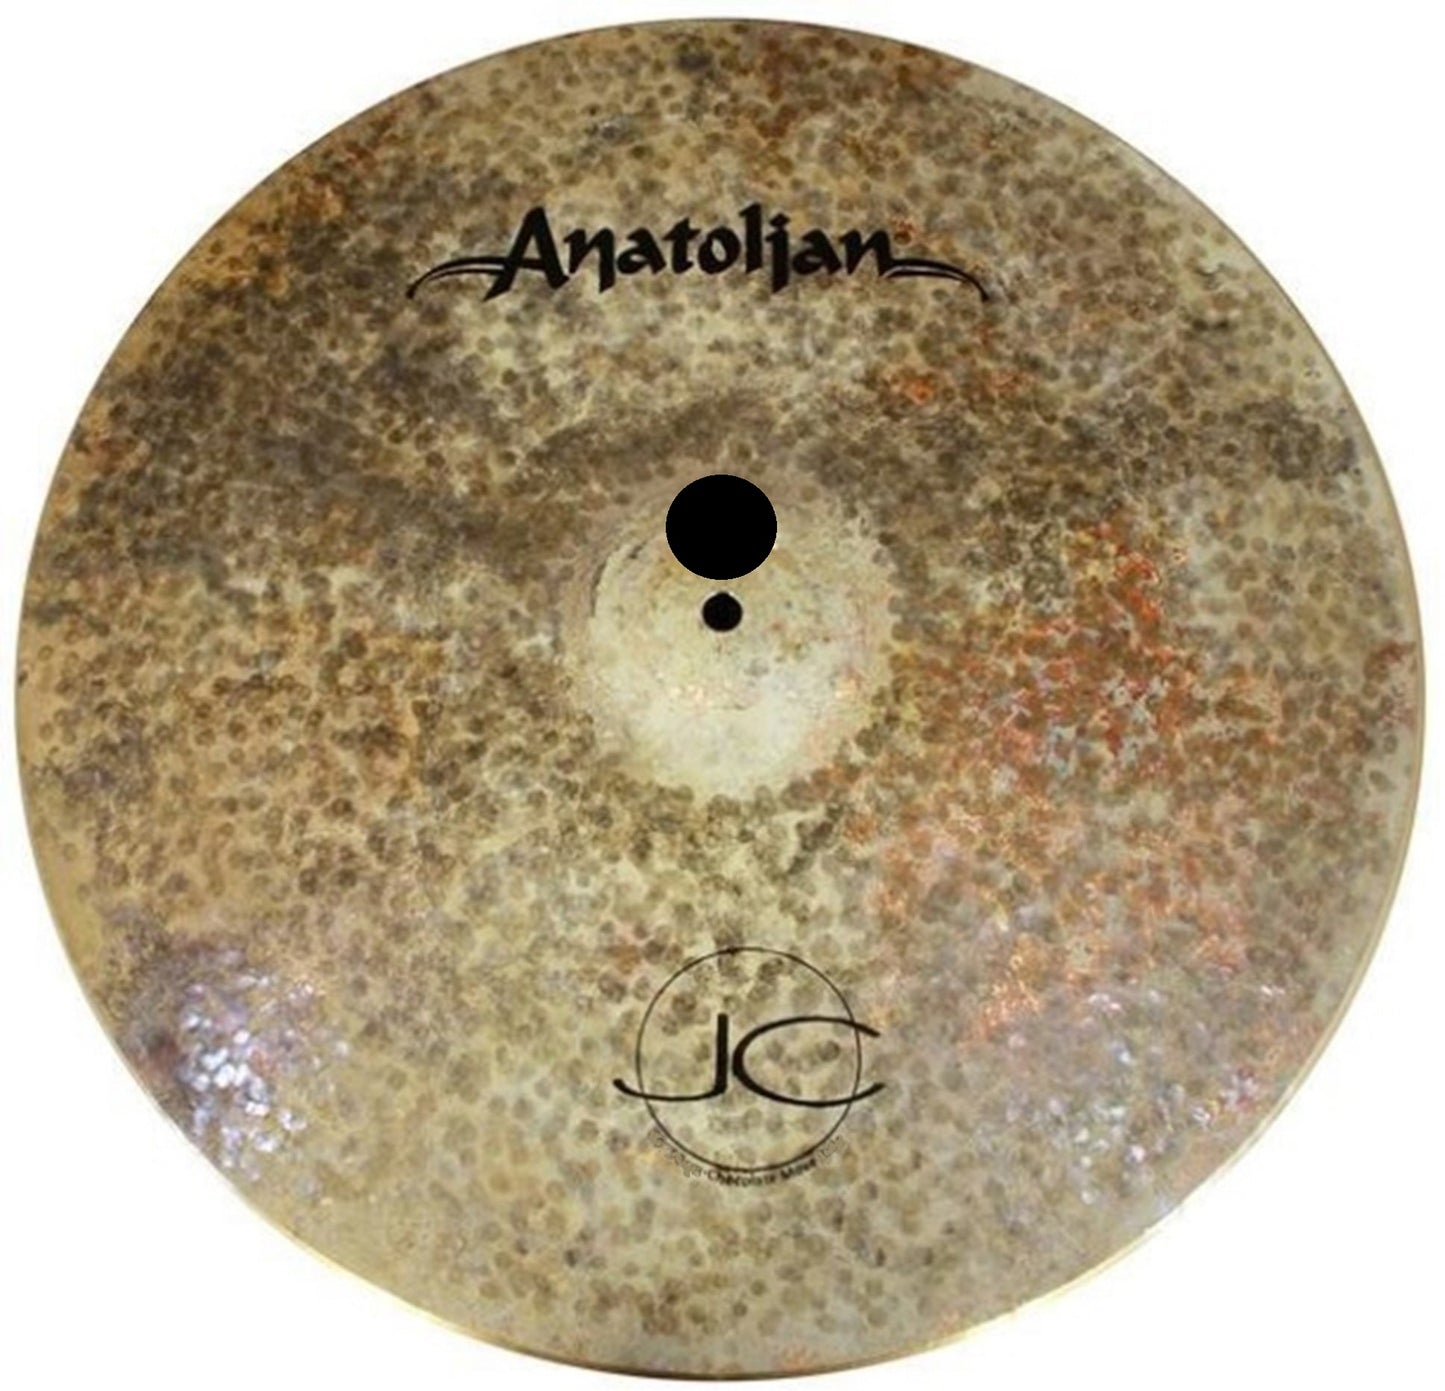 Anatolian Cymbals Jazz Series